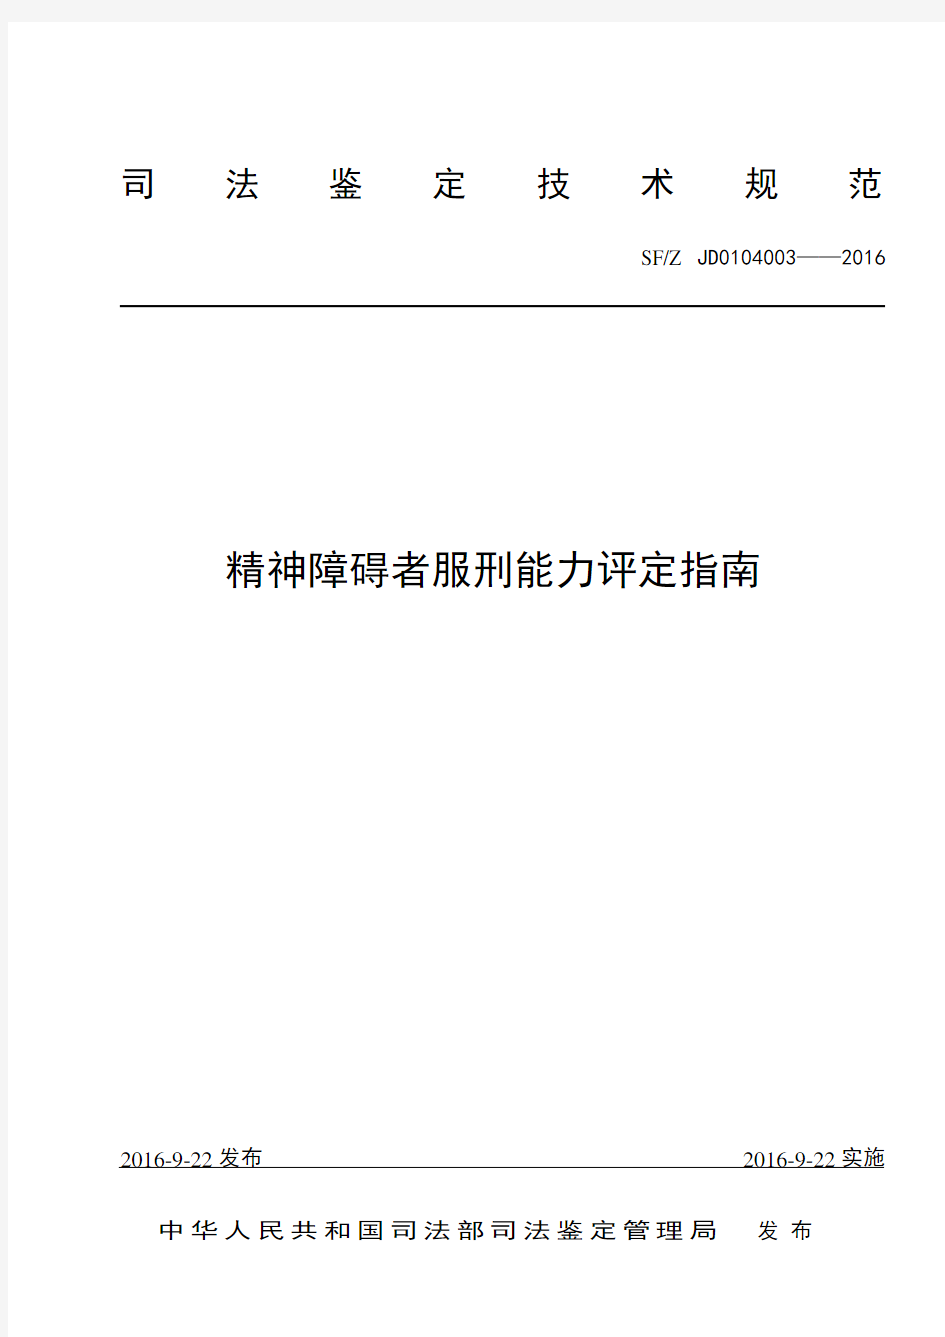 服刑能力评定标准细则-中华人民共和国司法部